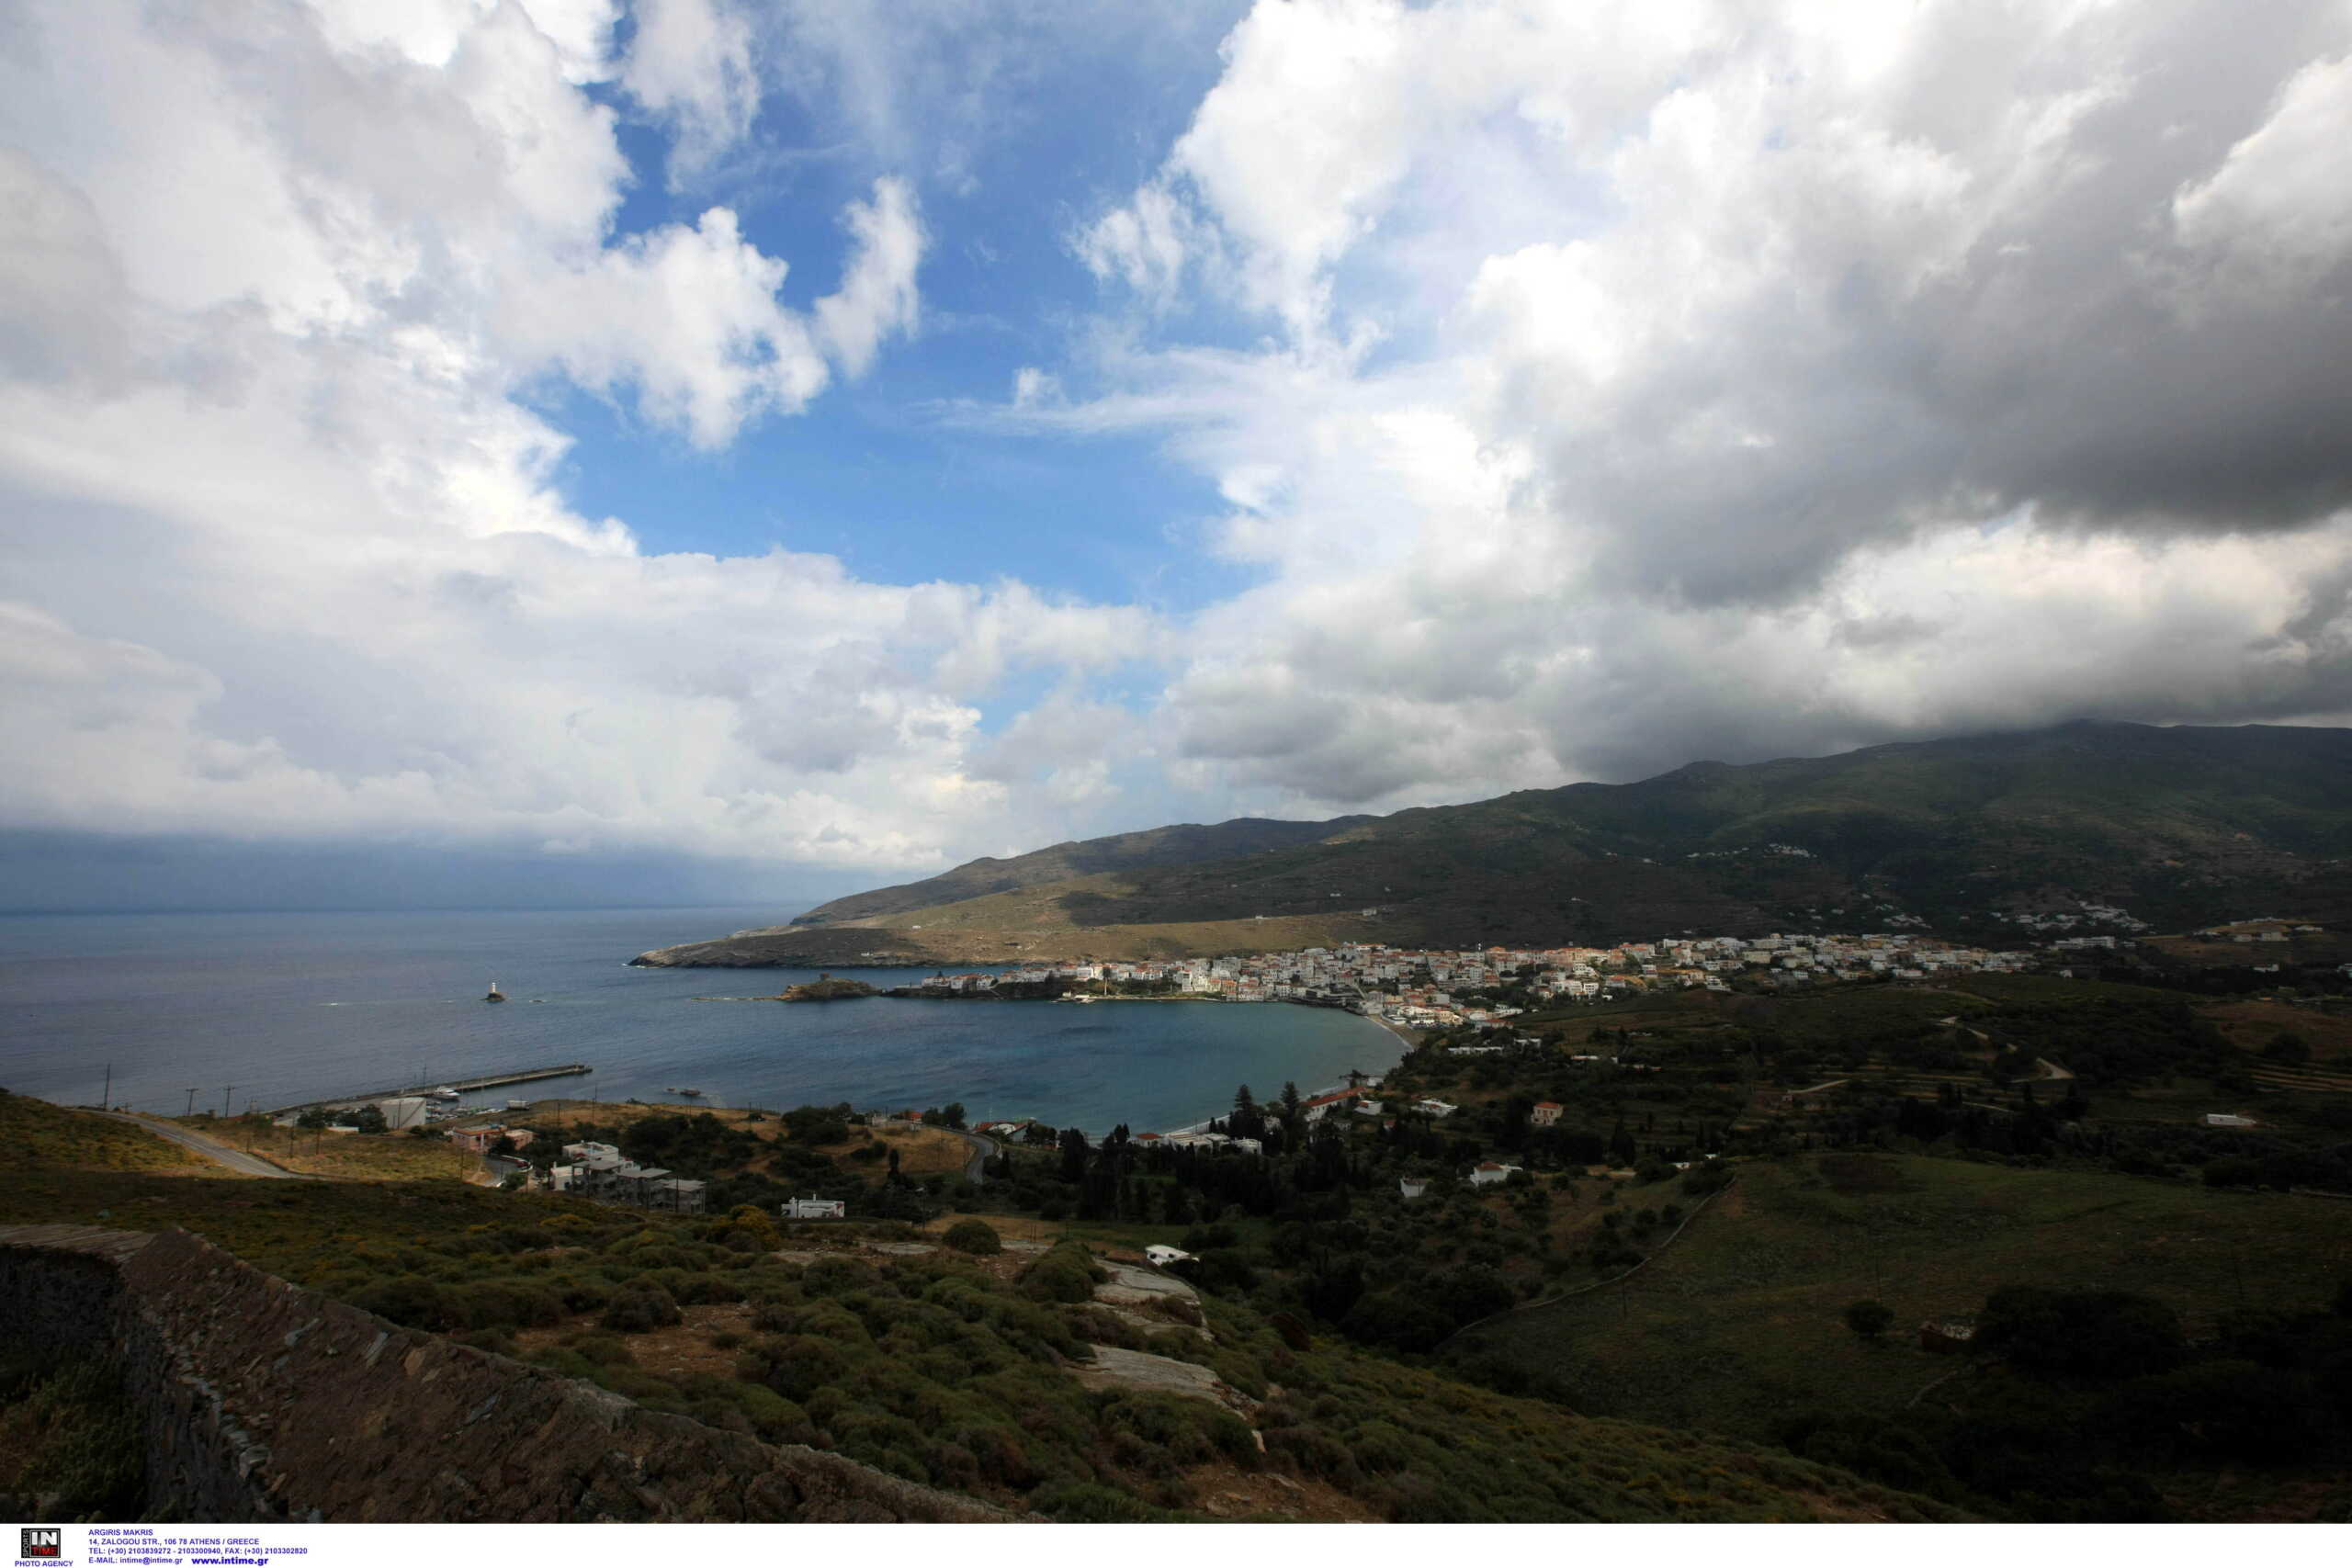 Η Άνδρος στα 10 καλύτερα «μυστικά» νησιά της Μεσογείου σύμφωνα με την Daily Telegraph